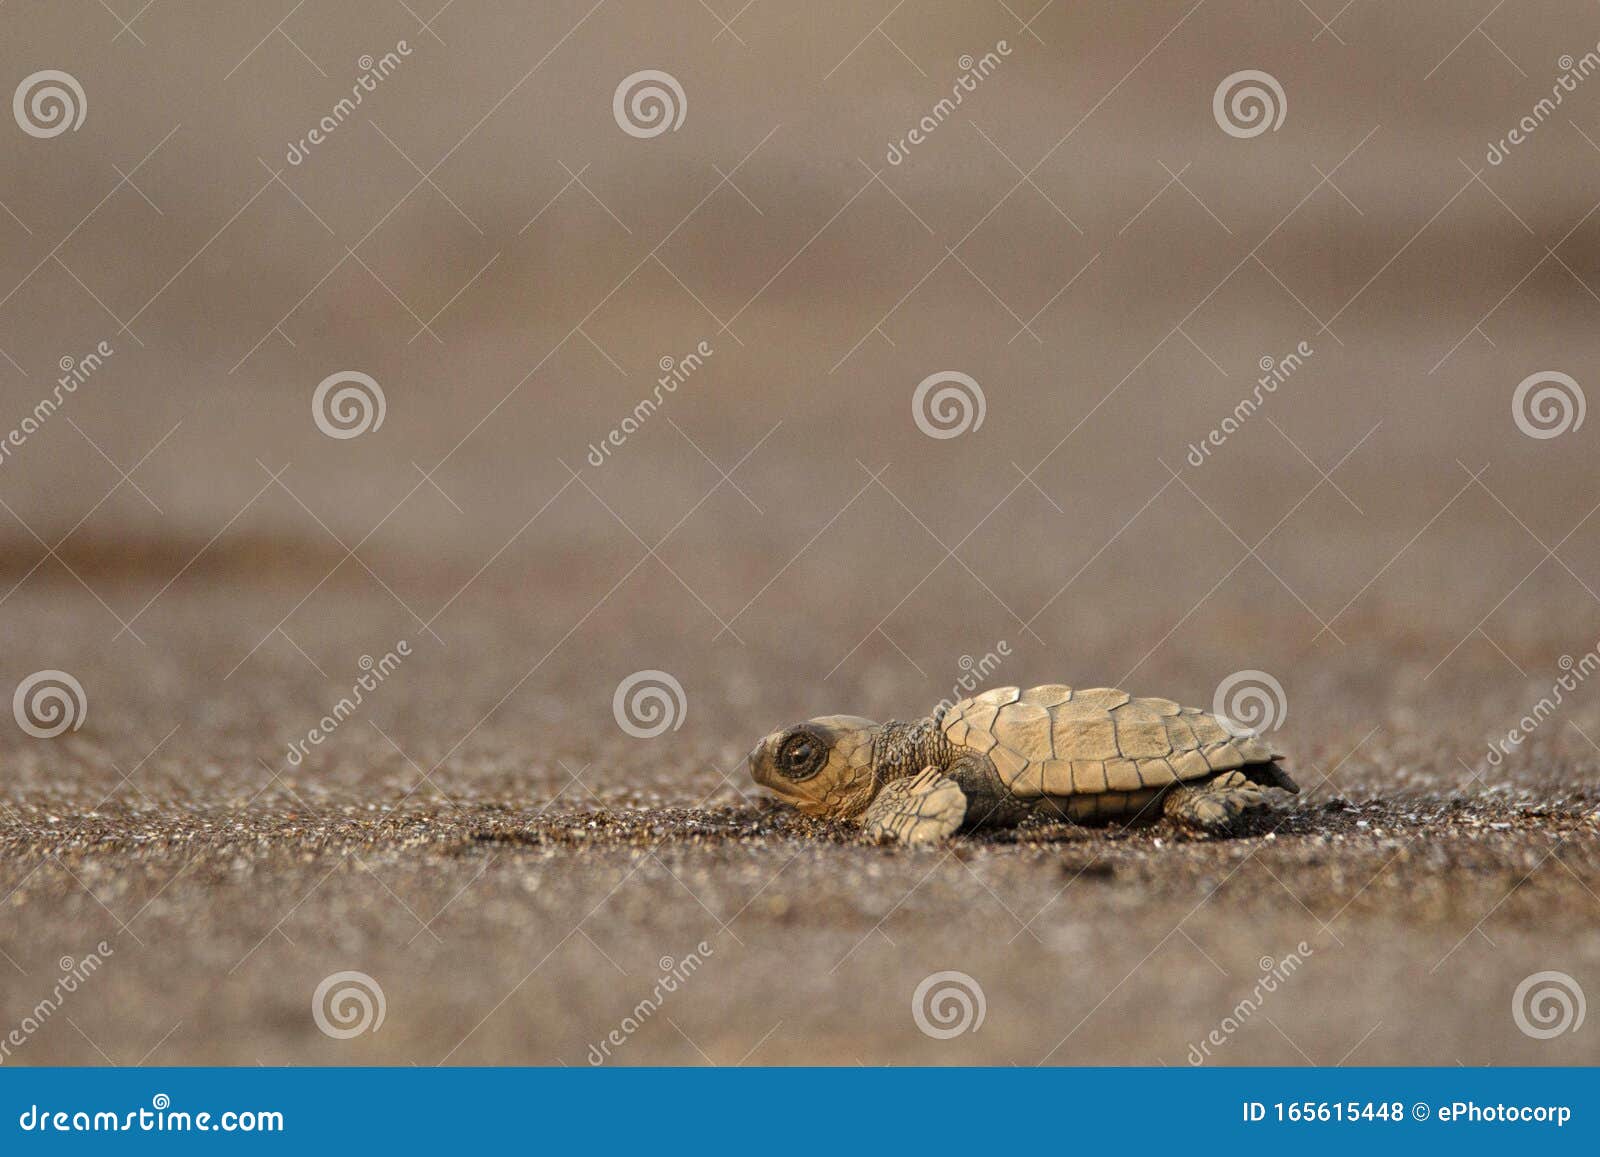 olive ridley turtle, lepidochelys olivacea, velas beach, ratnagiri, maharashtra